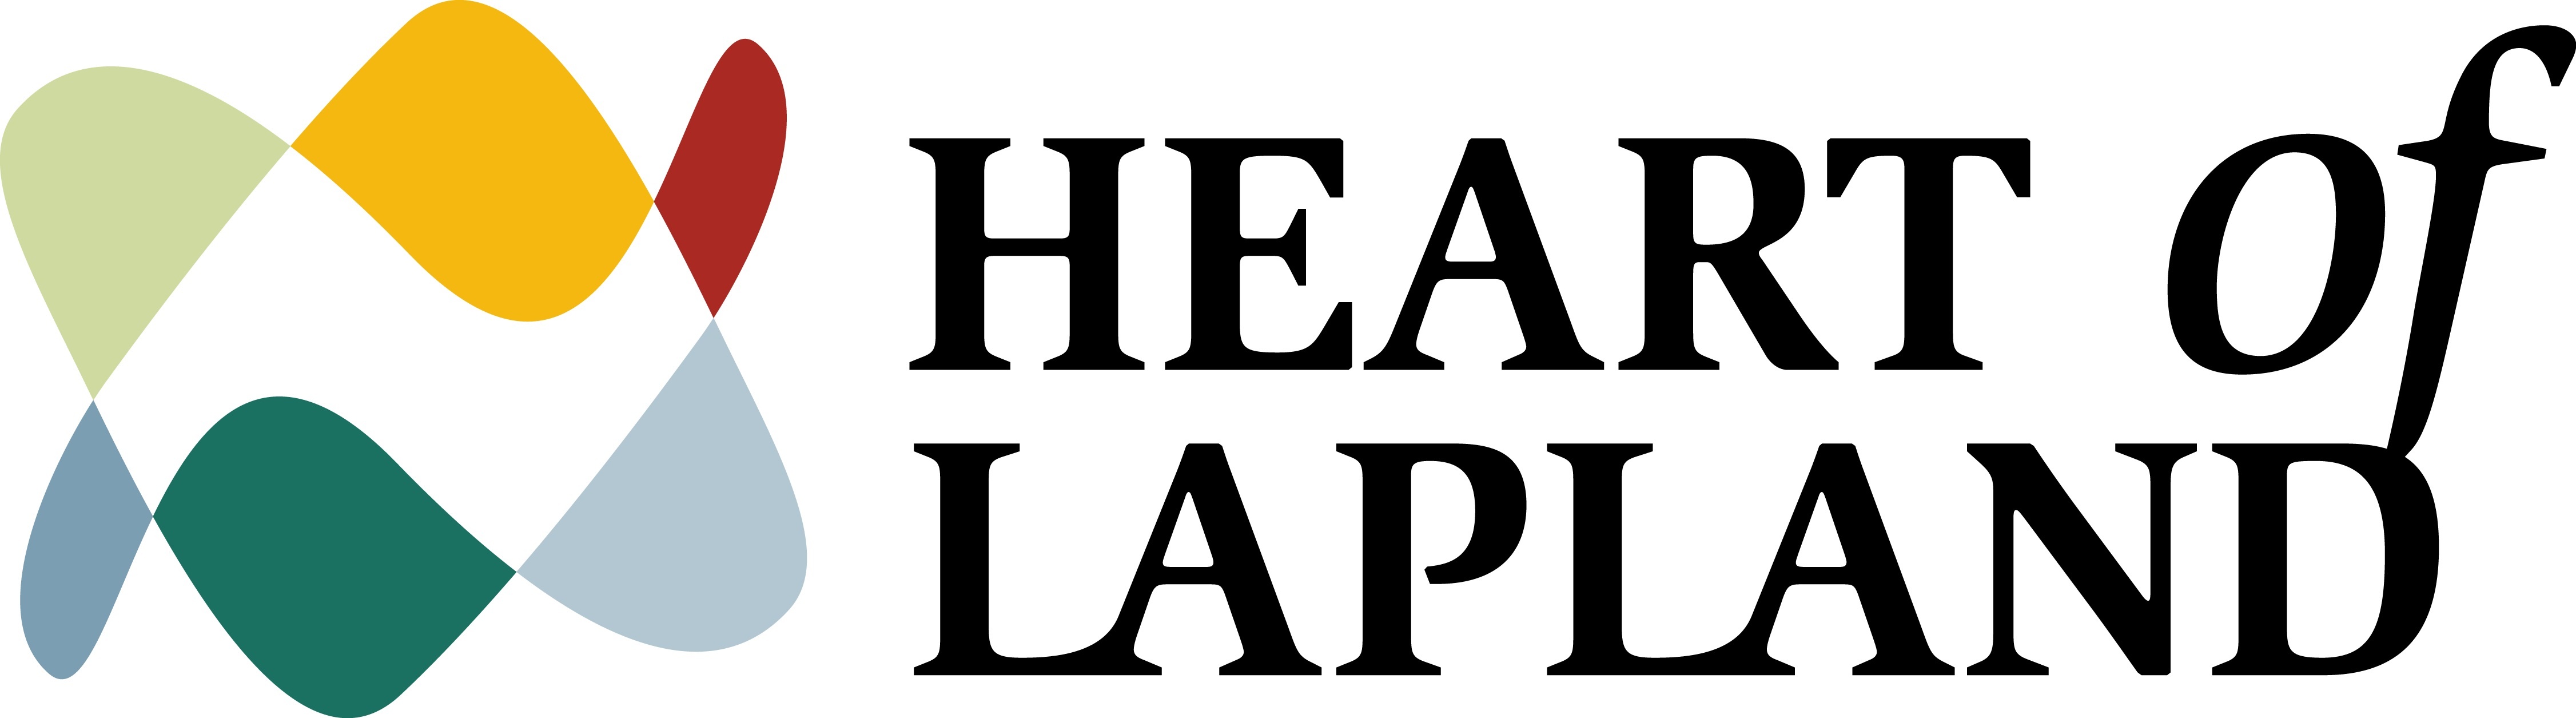 Logo-ITB 2018-Exhibitor-Heart of Lapland